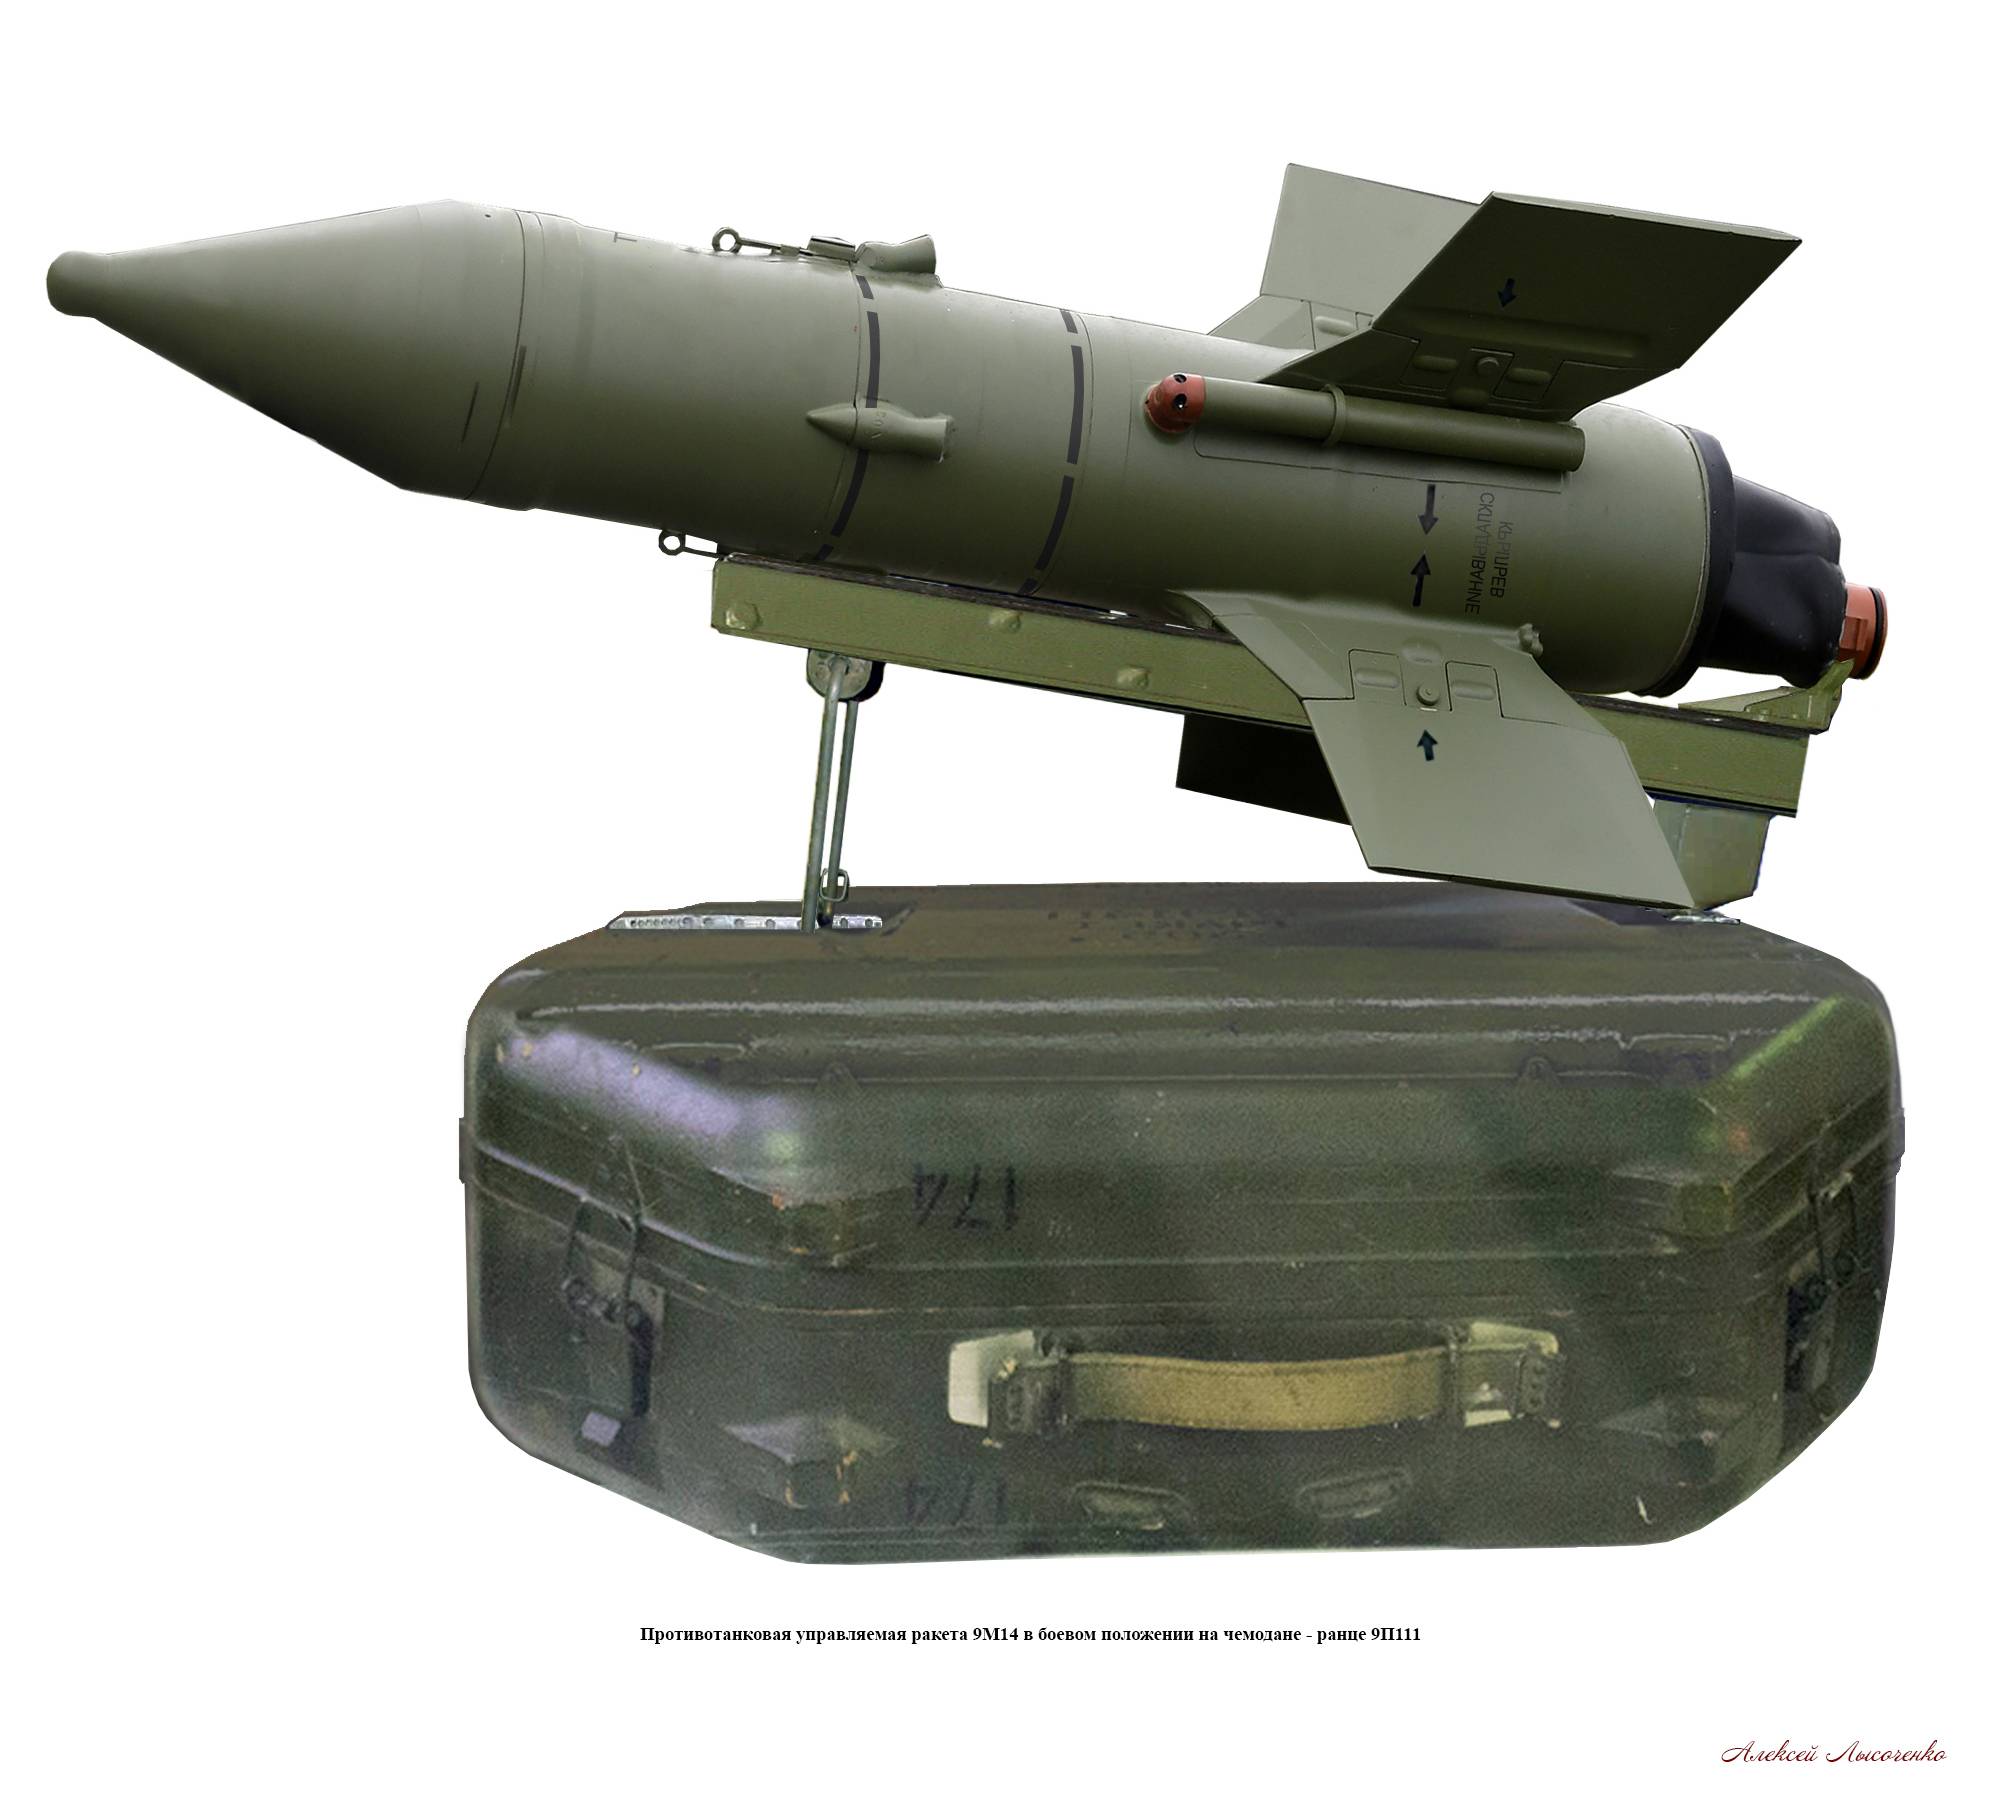 Птрк fgm-148 джавелин - американский противотанковый ракетный комплекс